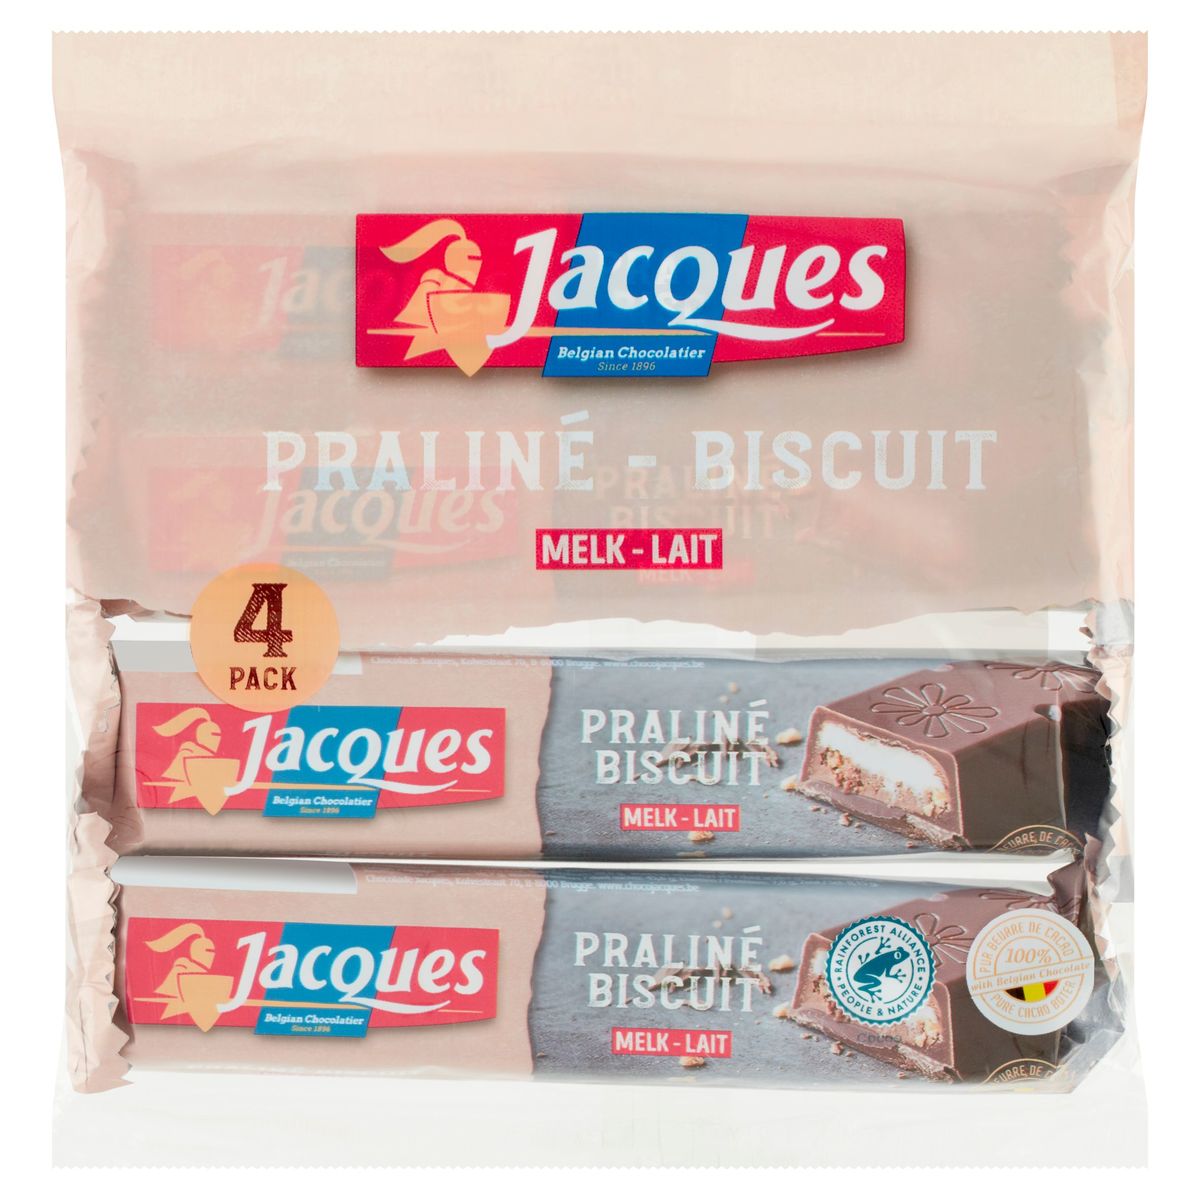 Jacques Biscuit Lait 46 g